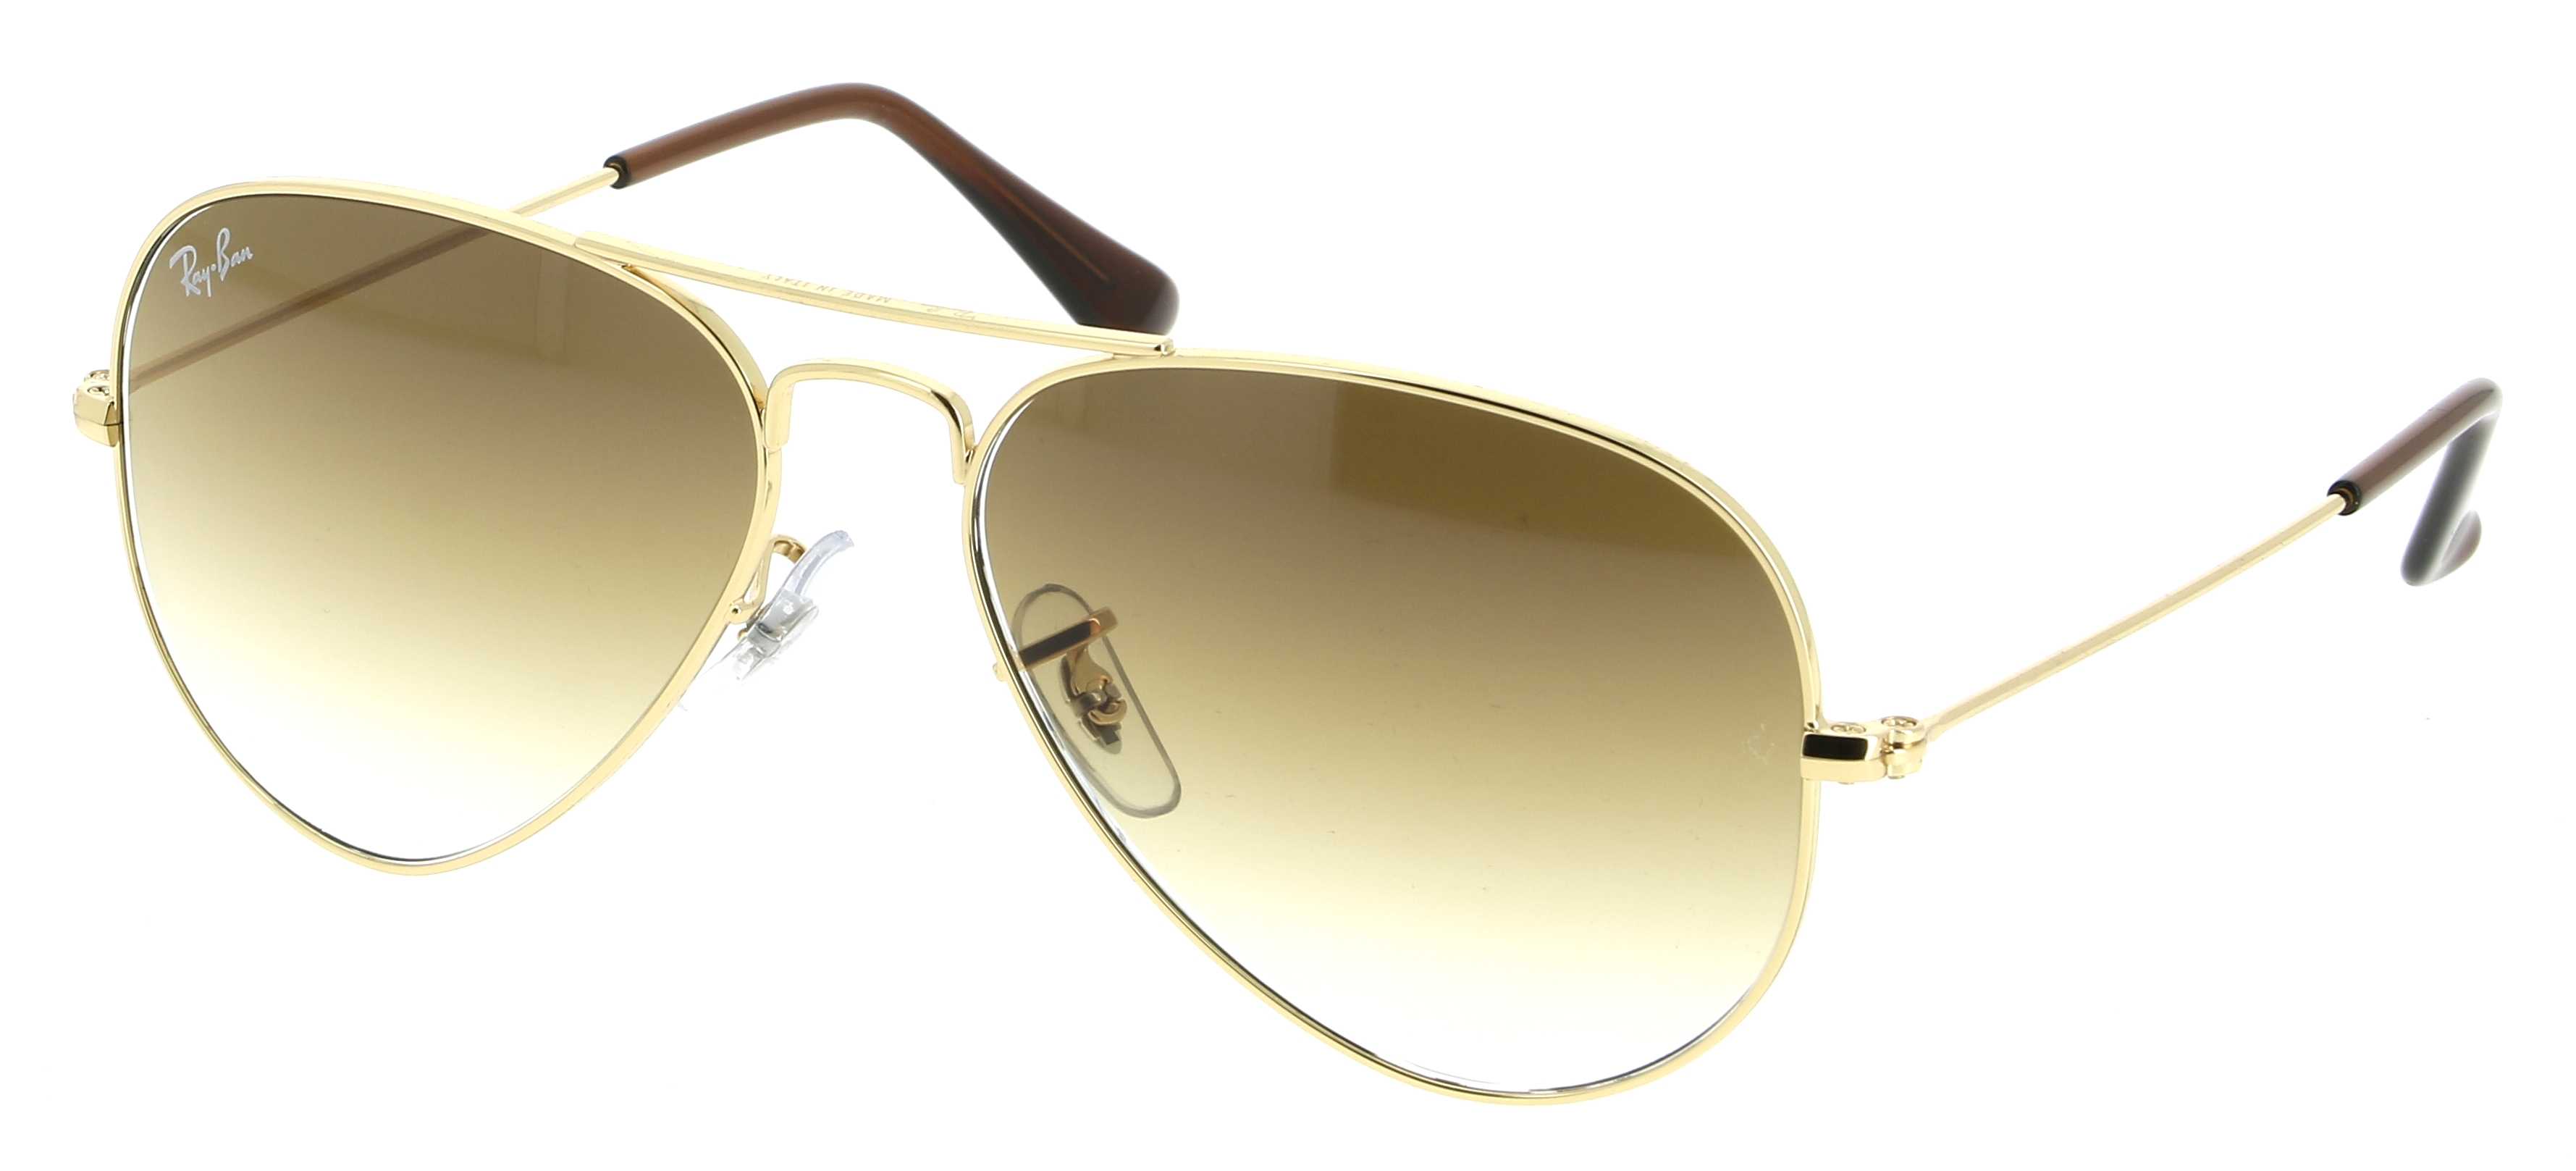 Sunglasses RAY-BAN RB 3025 001/51 Aviator 55/14 Unisex OR Aviator frames  Full Frame Glasses Vintage 55mmx14mm 133$CA